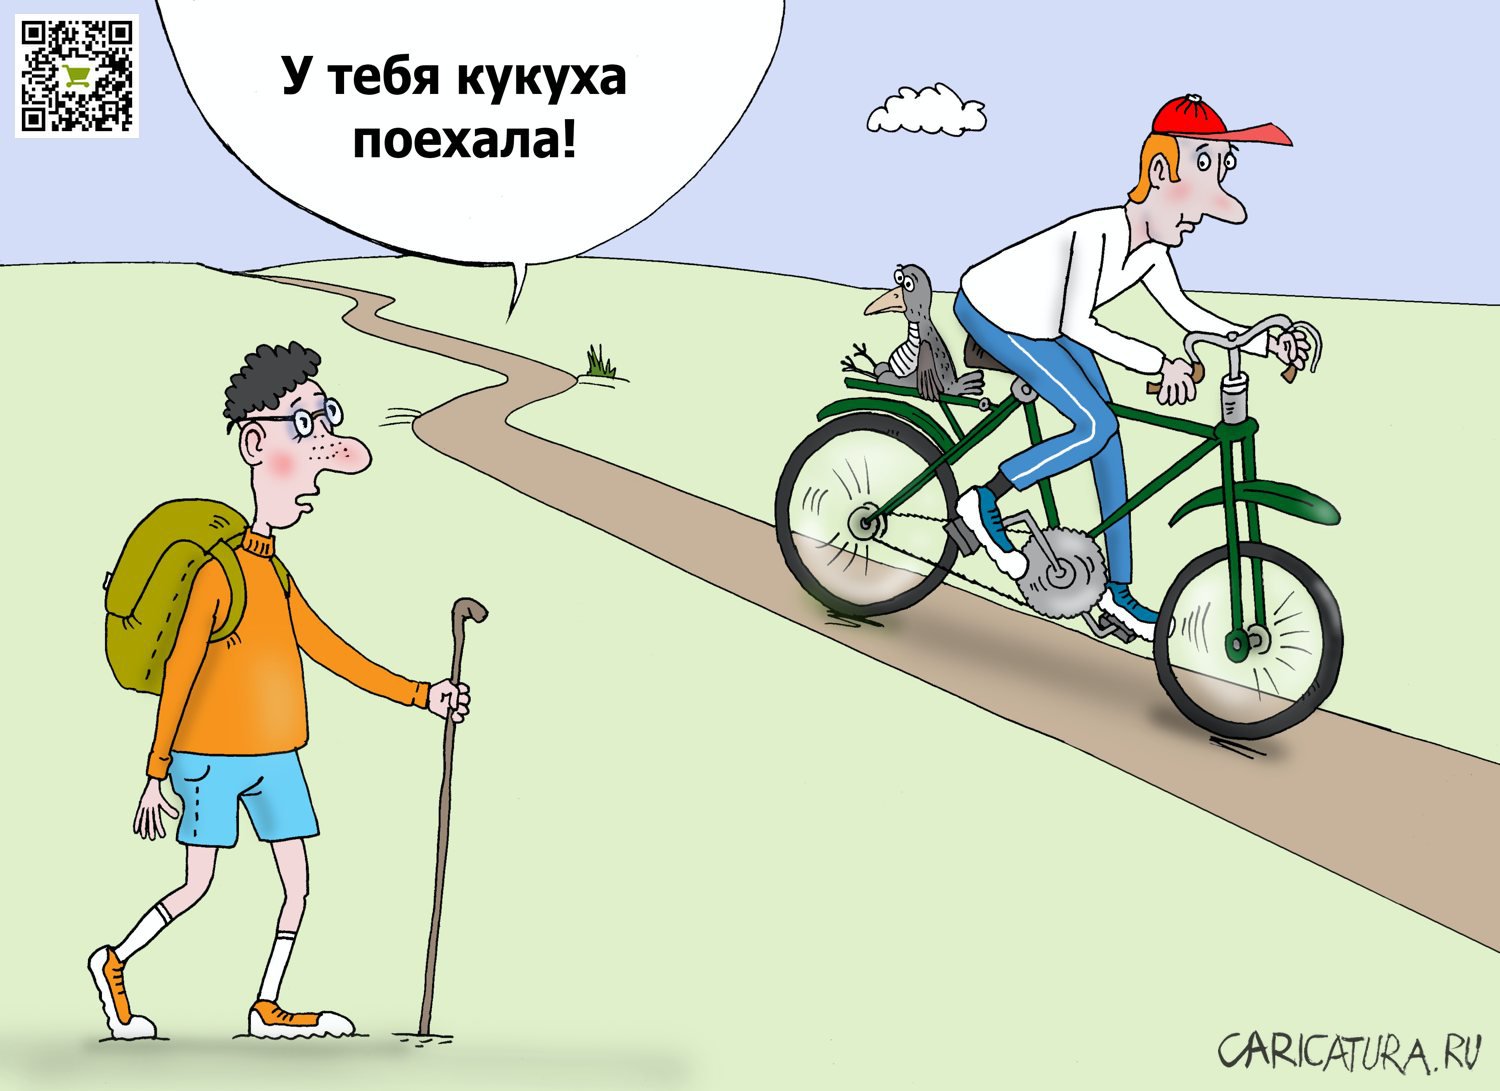 Карикатура "Кукушка", Валерий Тарасенко